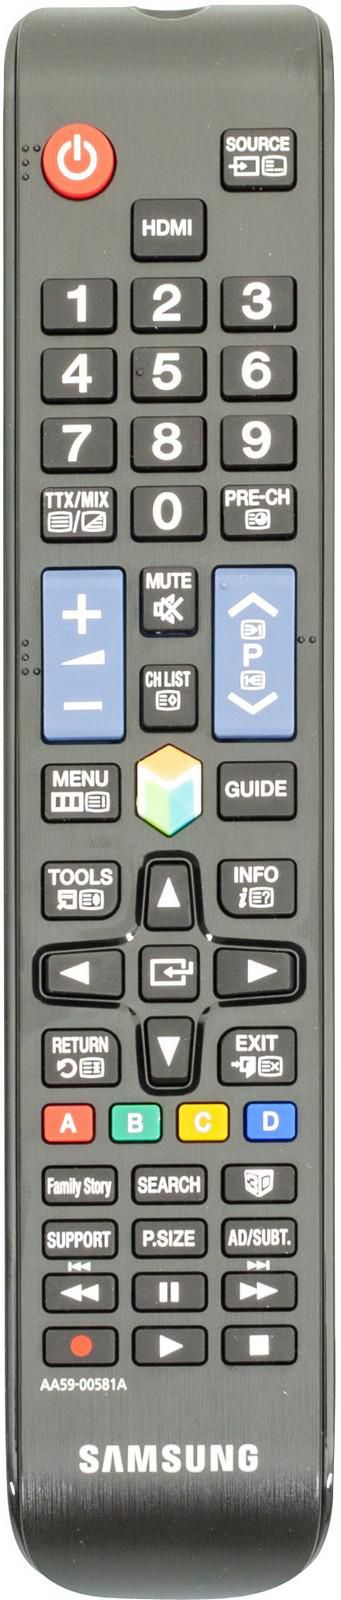 Samsung Remote Control TM1250 - W125144528